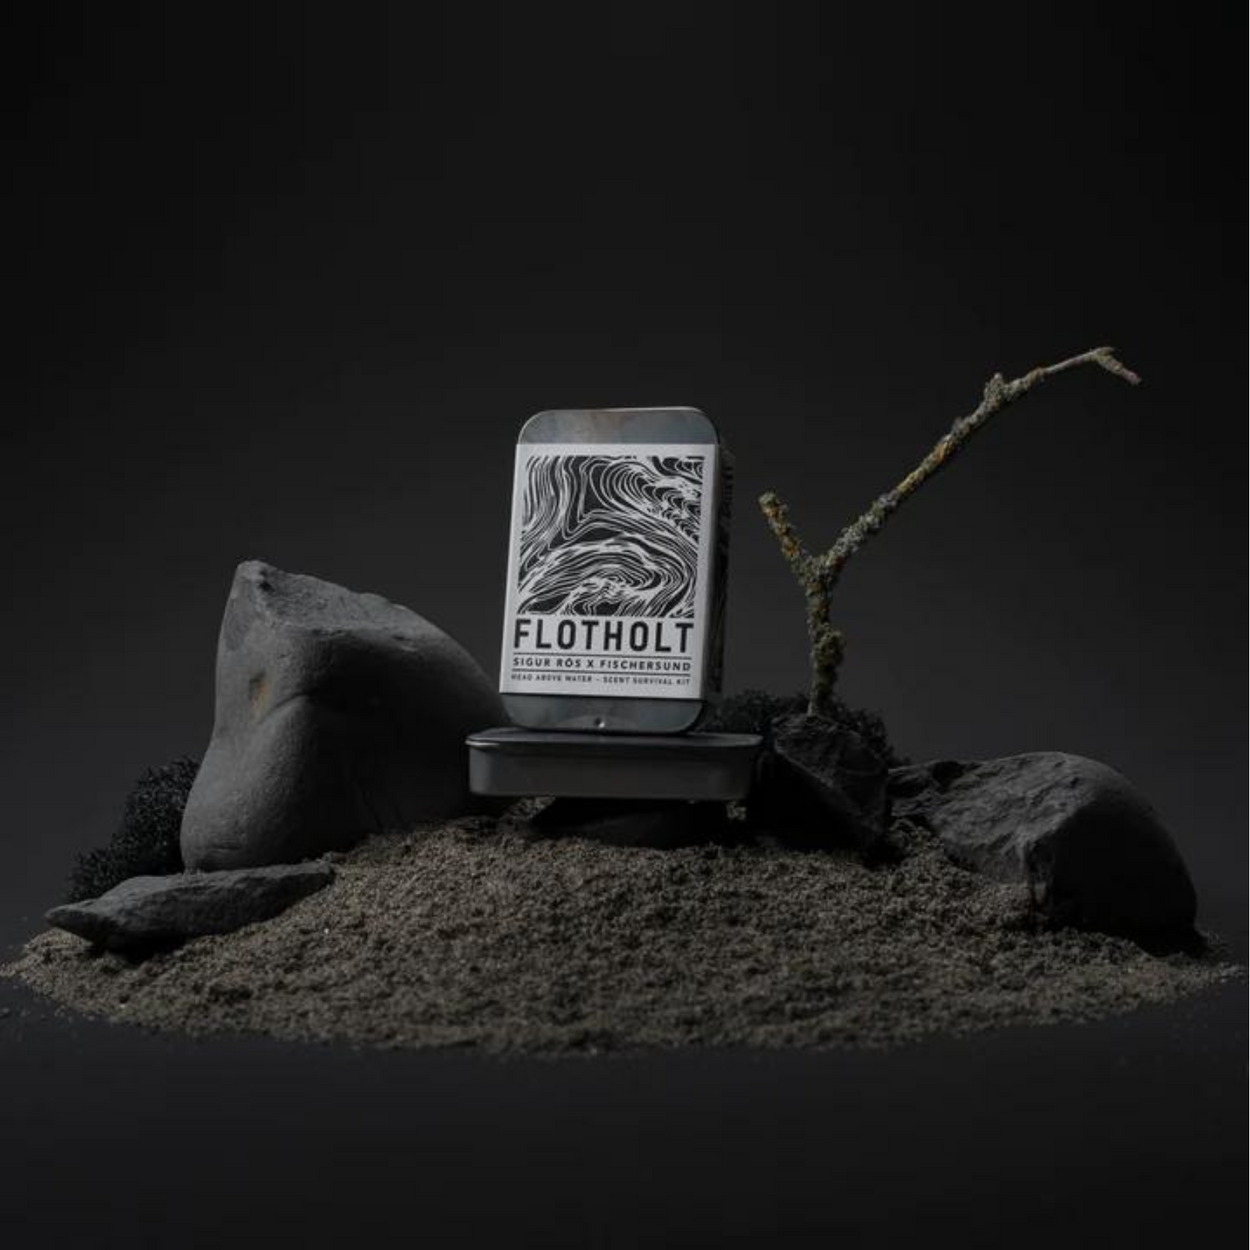 Fischersund Flotholt Scent Survival Kit with dark rocks and sand